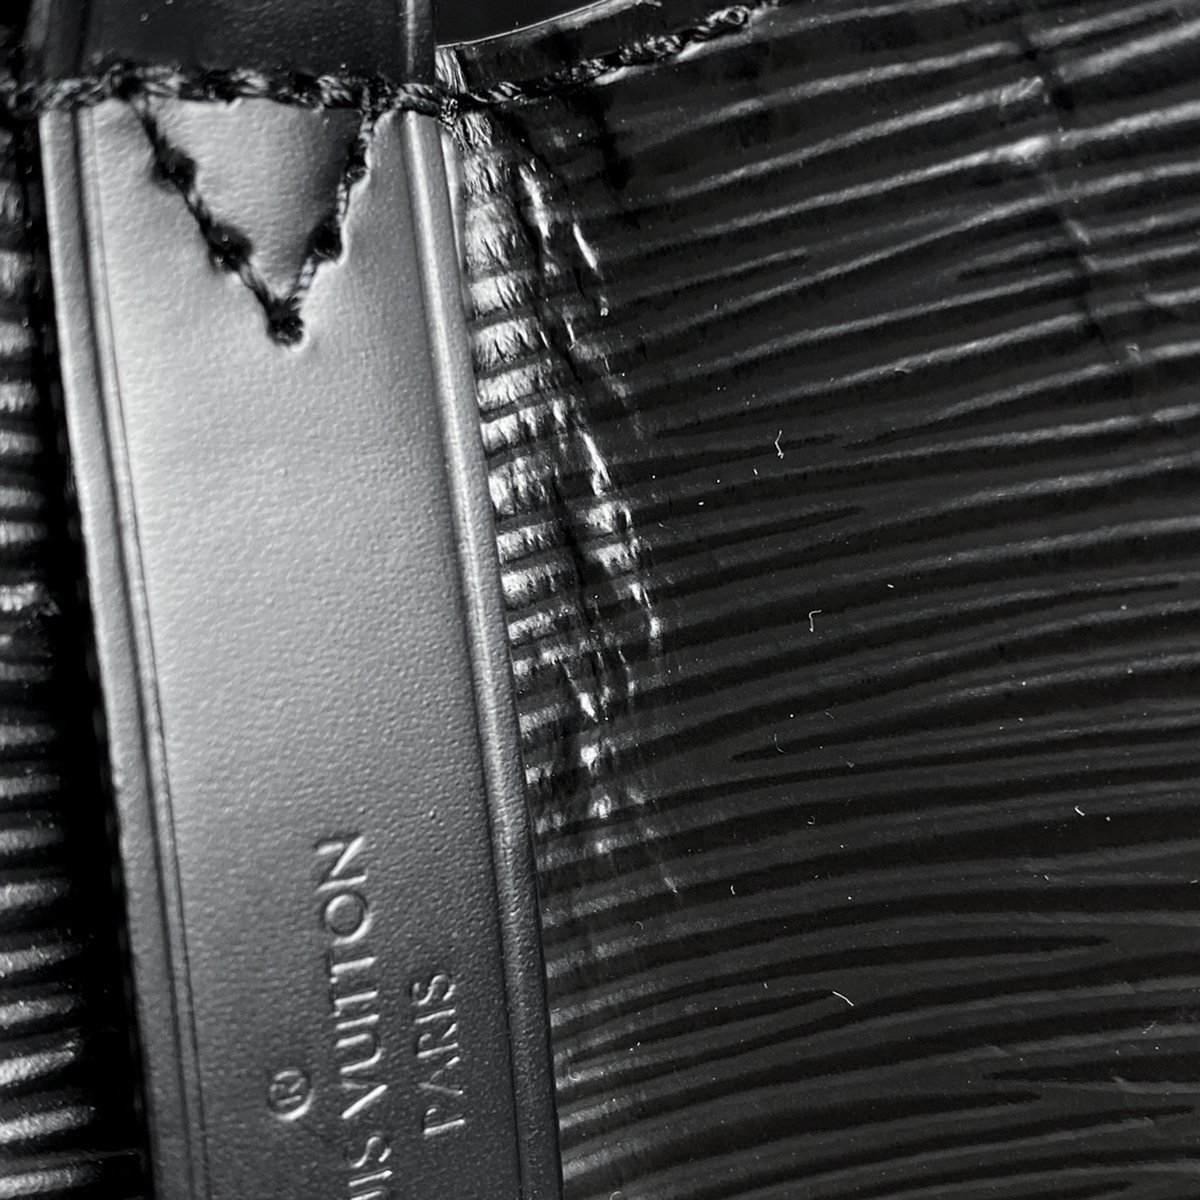 【在庫一掃】 ルイ・ヴィトン Louis Vuitton ネオノエ ショルダーバッグ 2WAY 巾着型 エピ ノワール(ブラック) M54366 レディース 【中古】_バイセル 14173_9